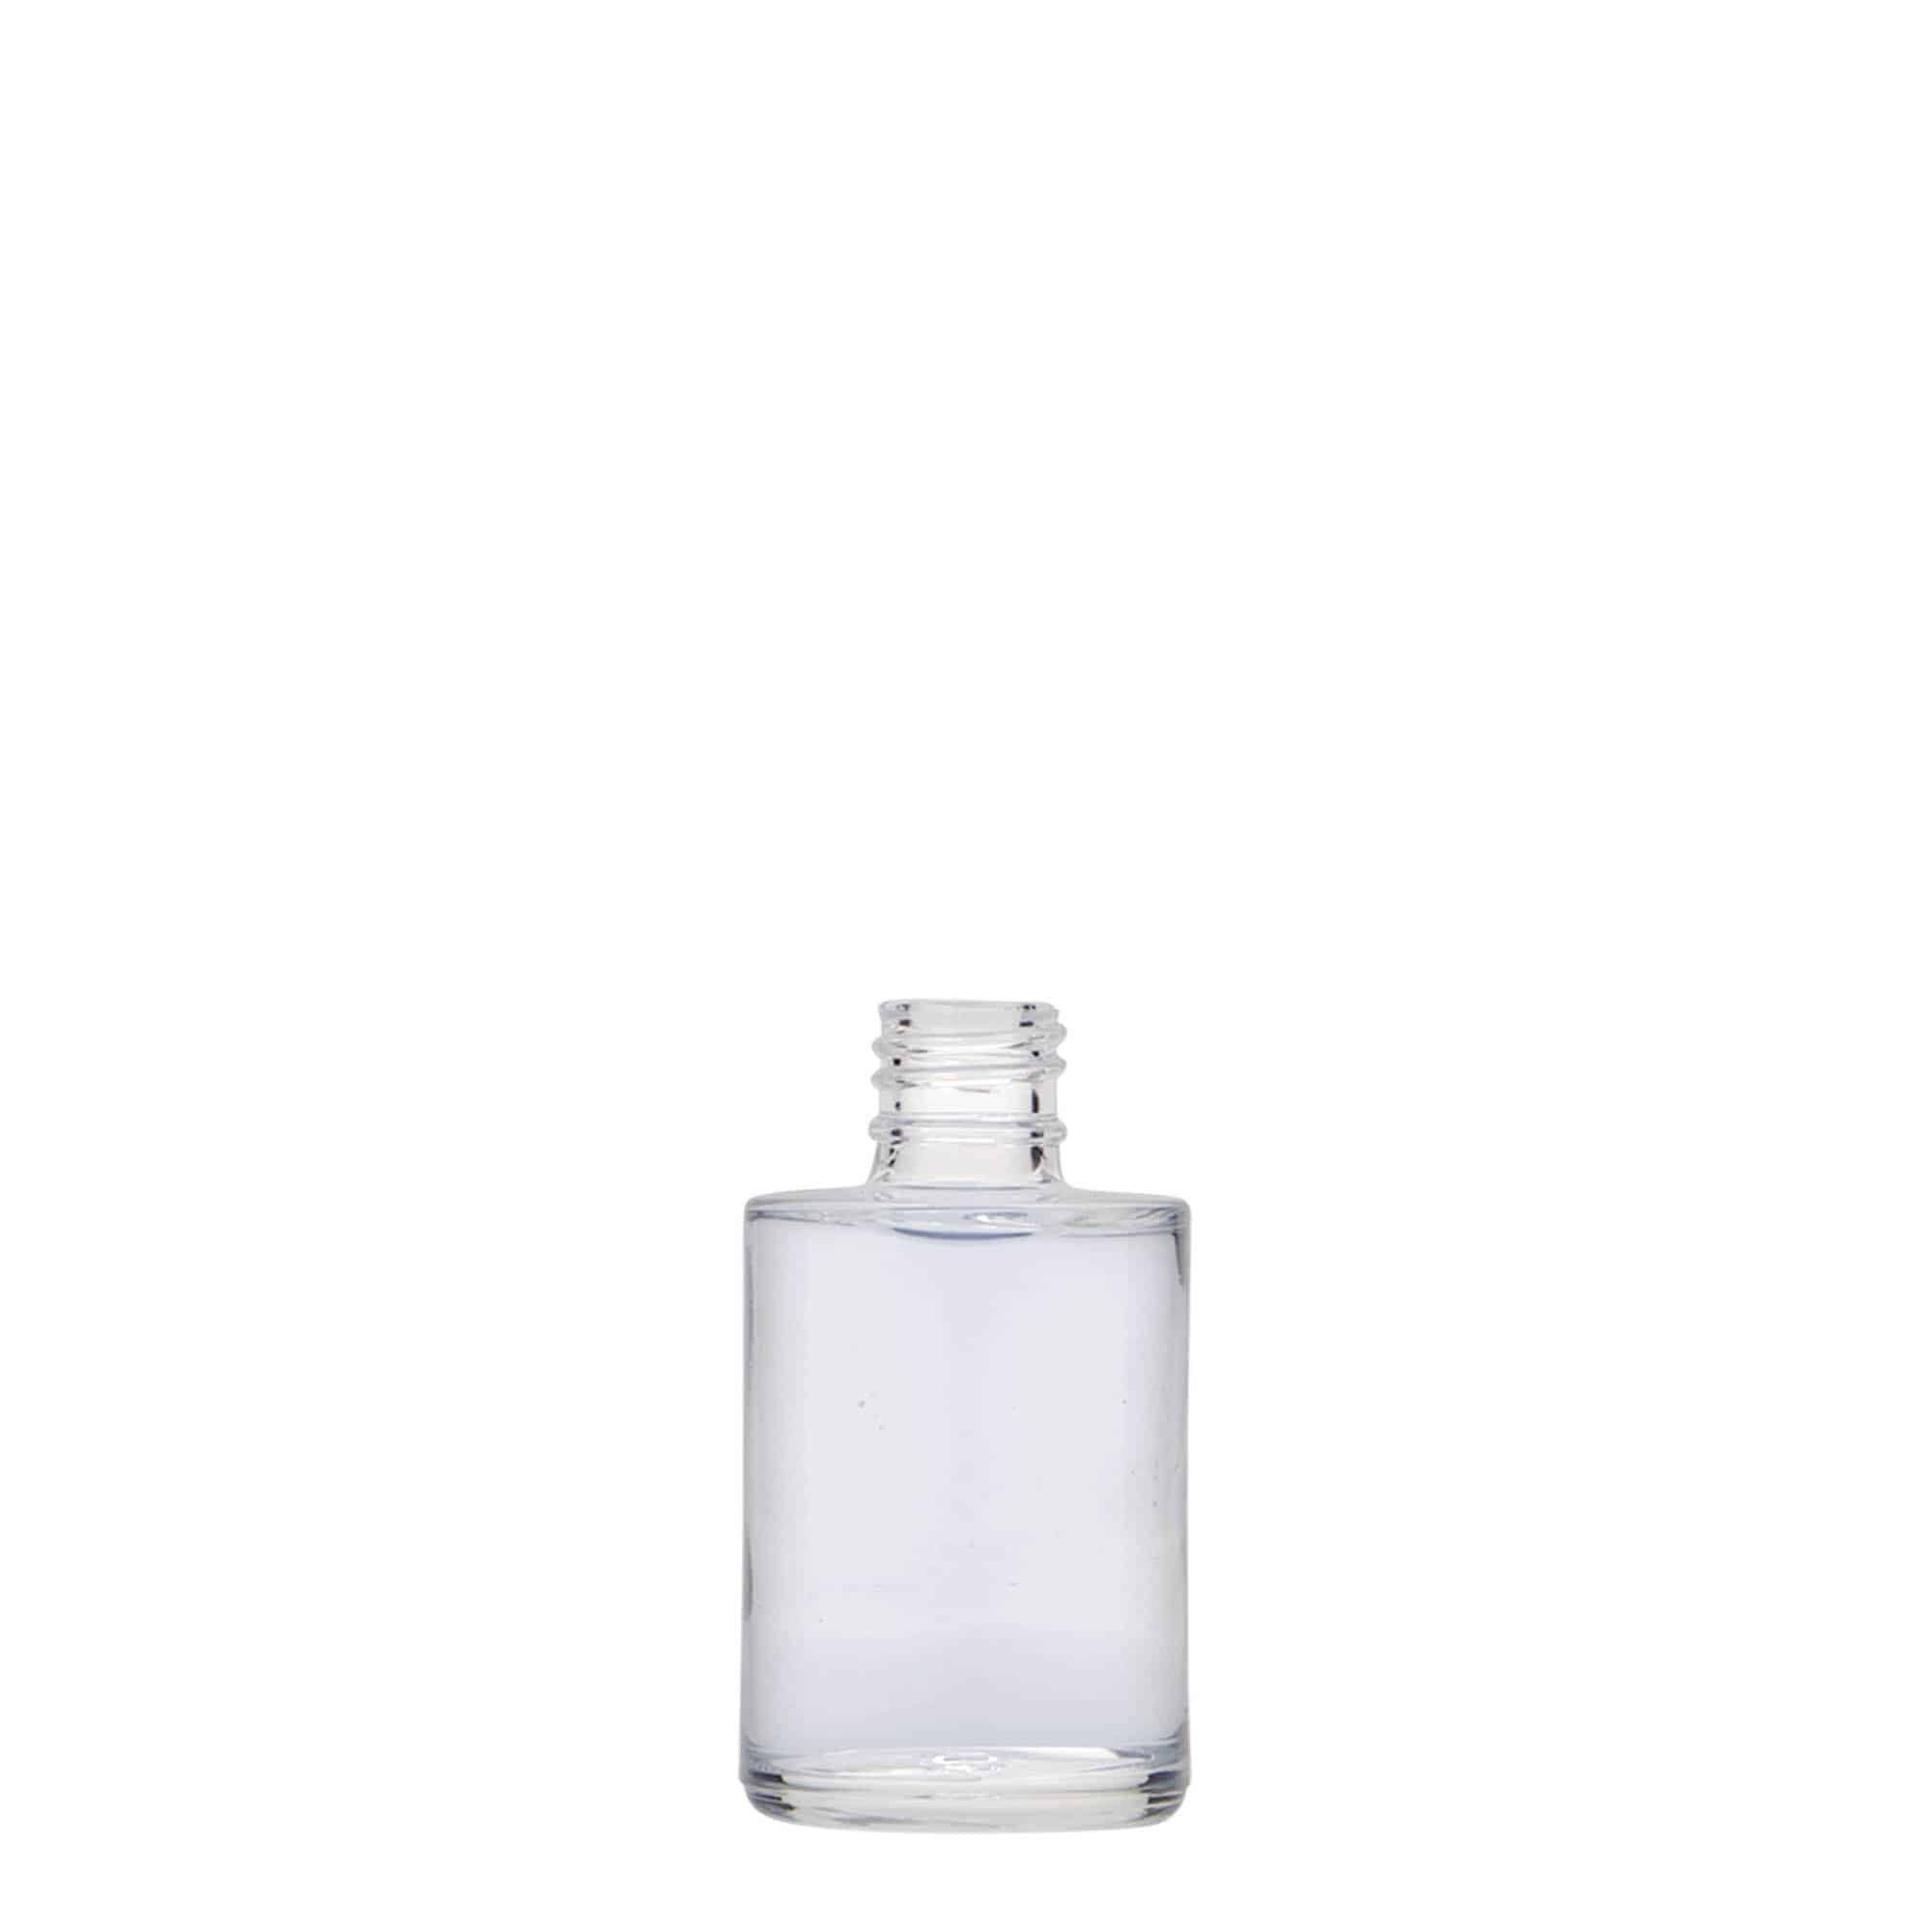 16 ml Nagellackflasche 'London' mit Pinsel, Glas